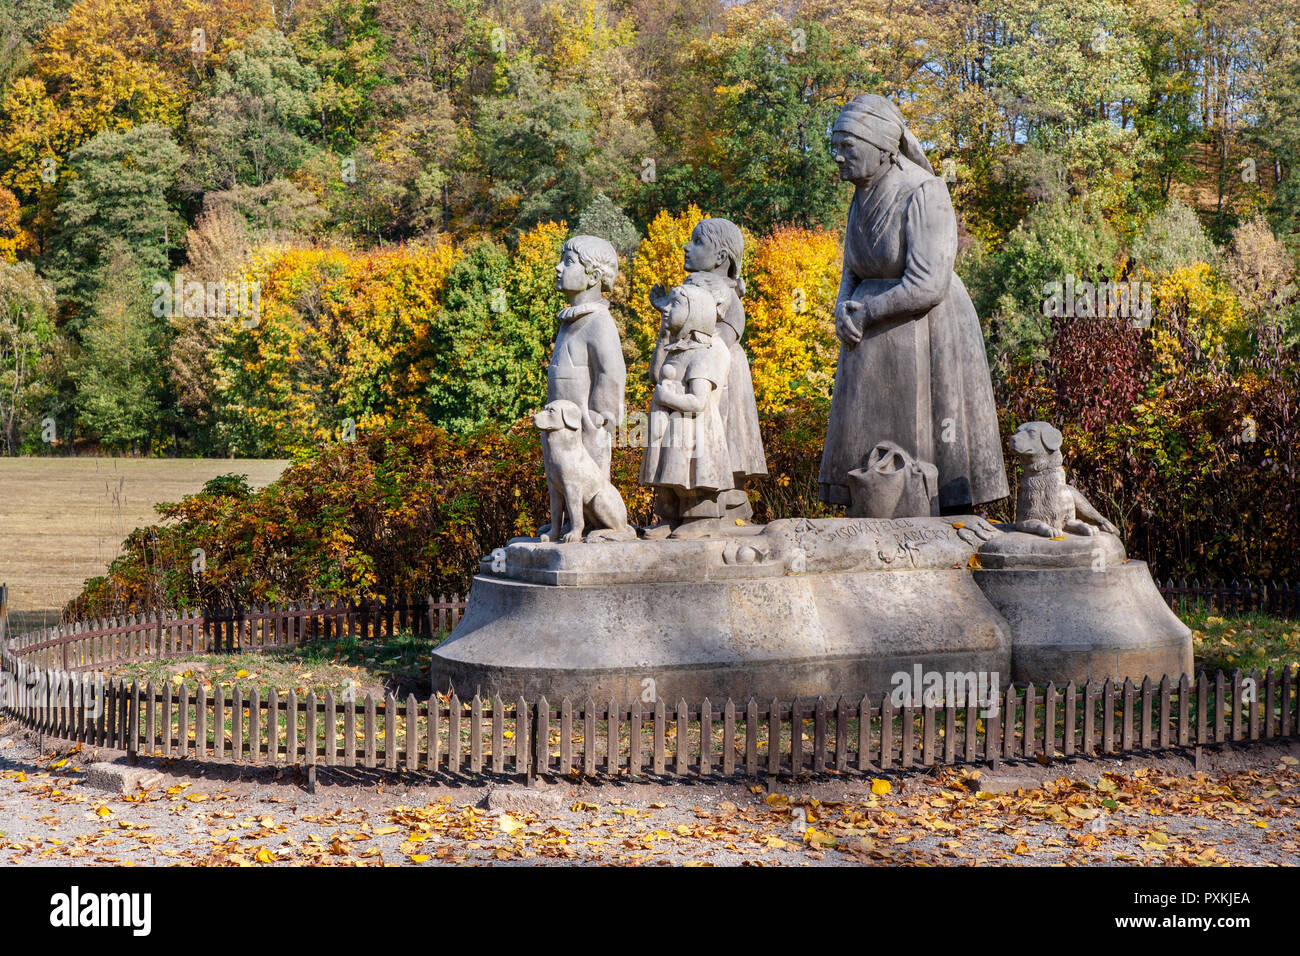 Socha Babicka s detmi  (1922, Otto Gutfreud), Ratibořice, Babiččino údolí, Česká republika / Statue of Grandmother with children, Ratiborice, East Boh Stock Photo